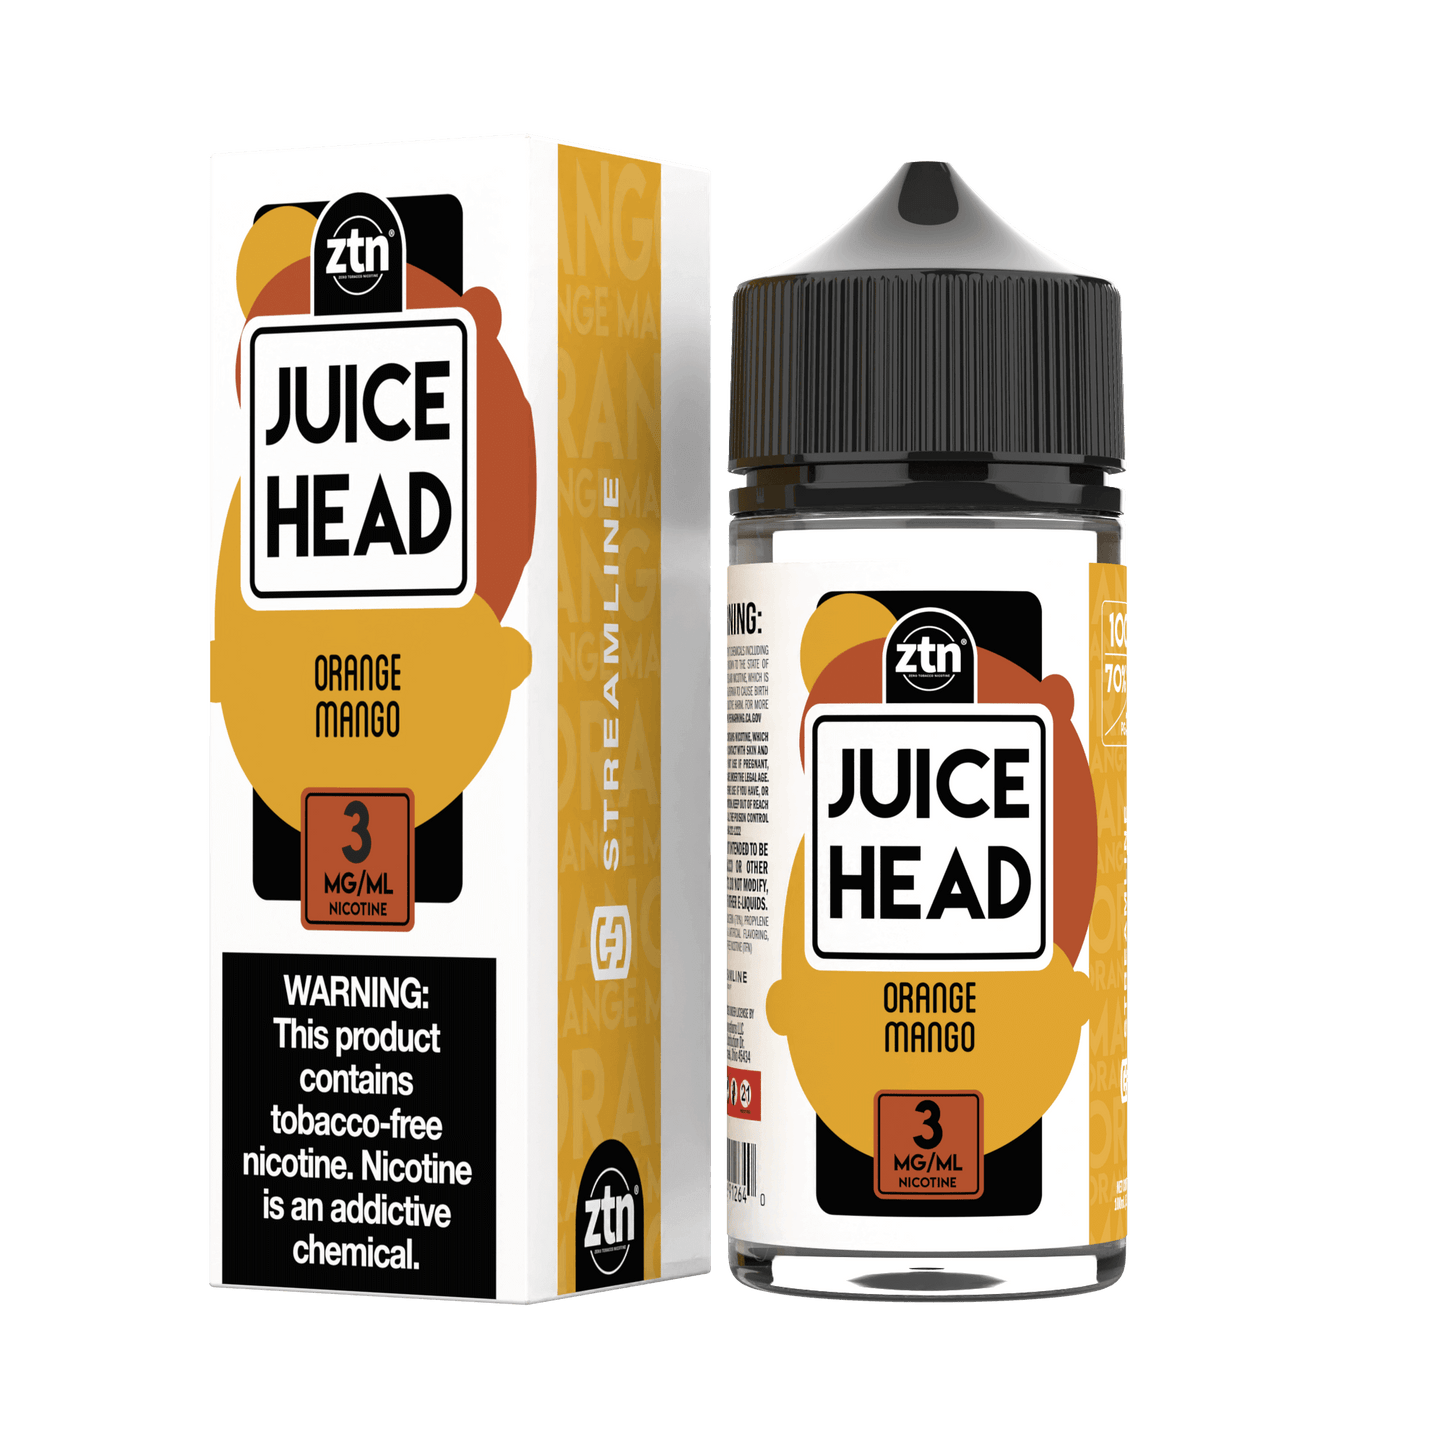 Orange Mango (ZTN) by Streamline - Juice Head 100mL with packaging